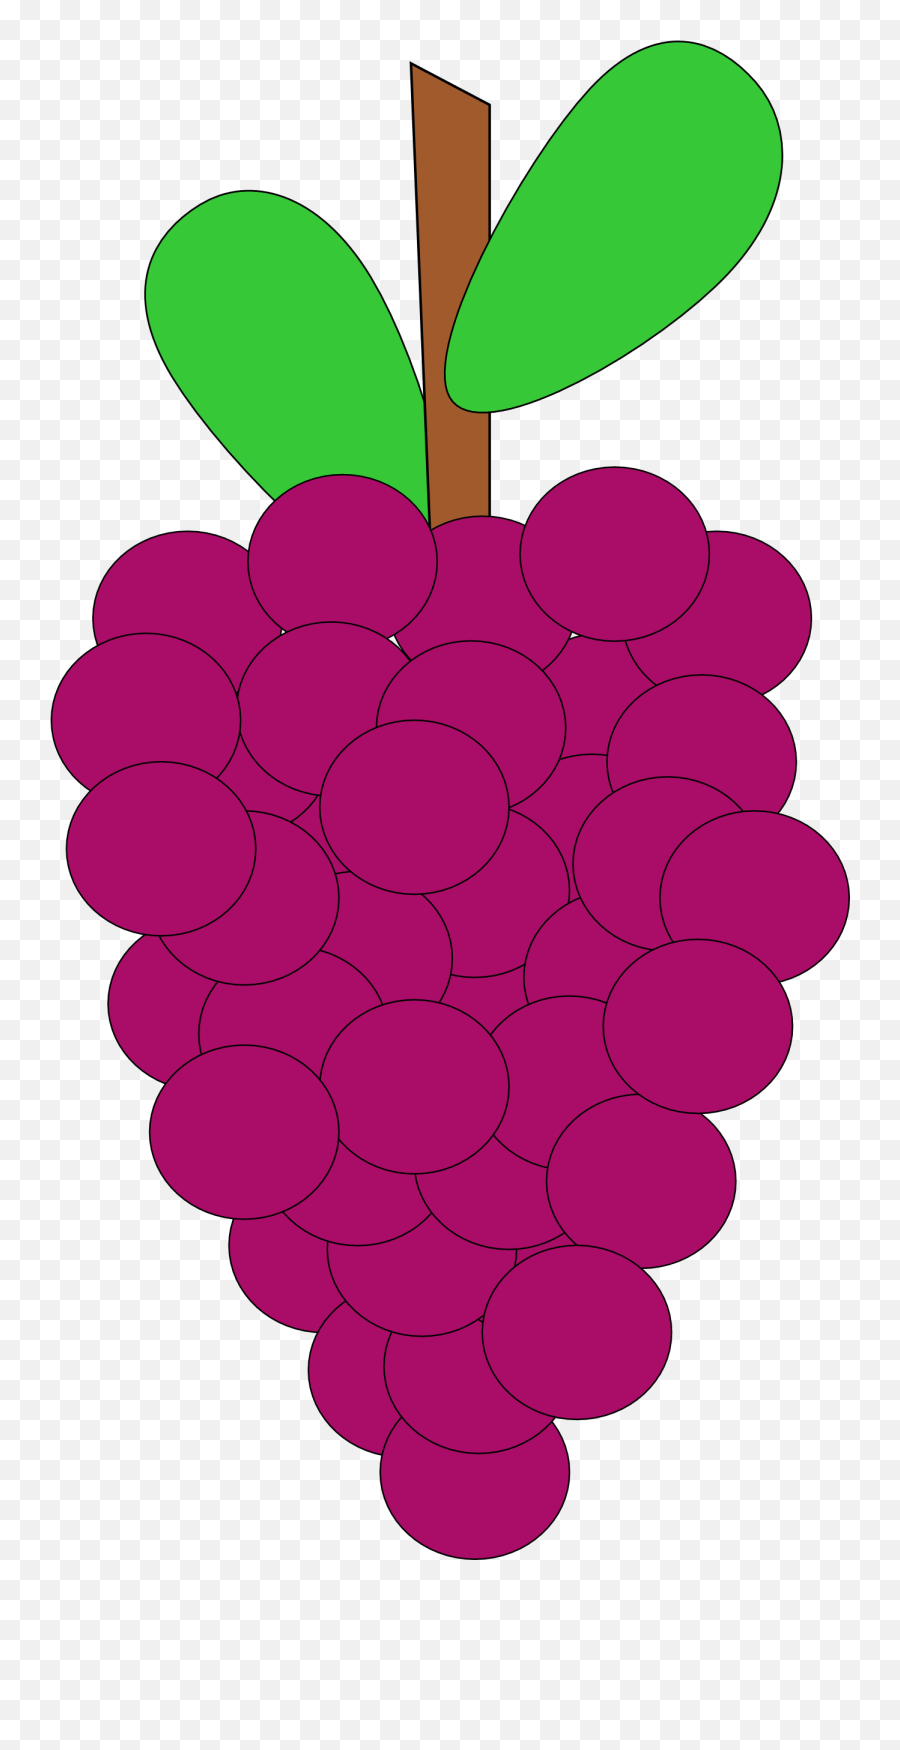 Grapes Clipart Grape Fruit Clip Art Downloadclipart Org - Cartoon Grape Vine Png,Pewdiepie Logo Transparent